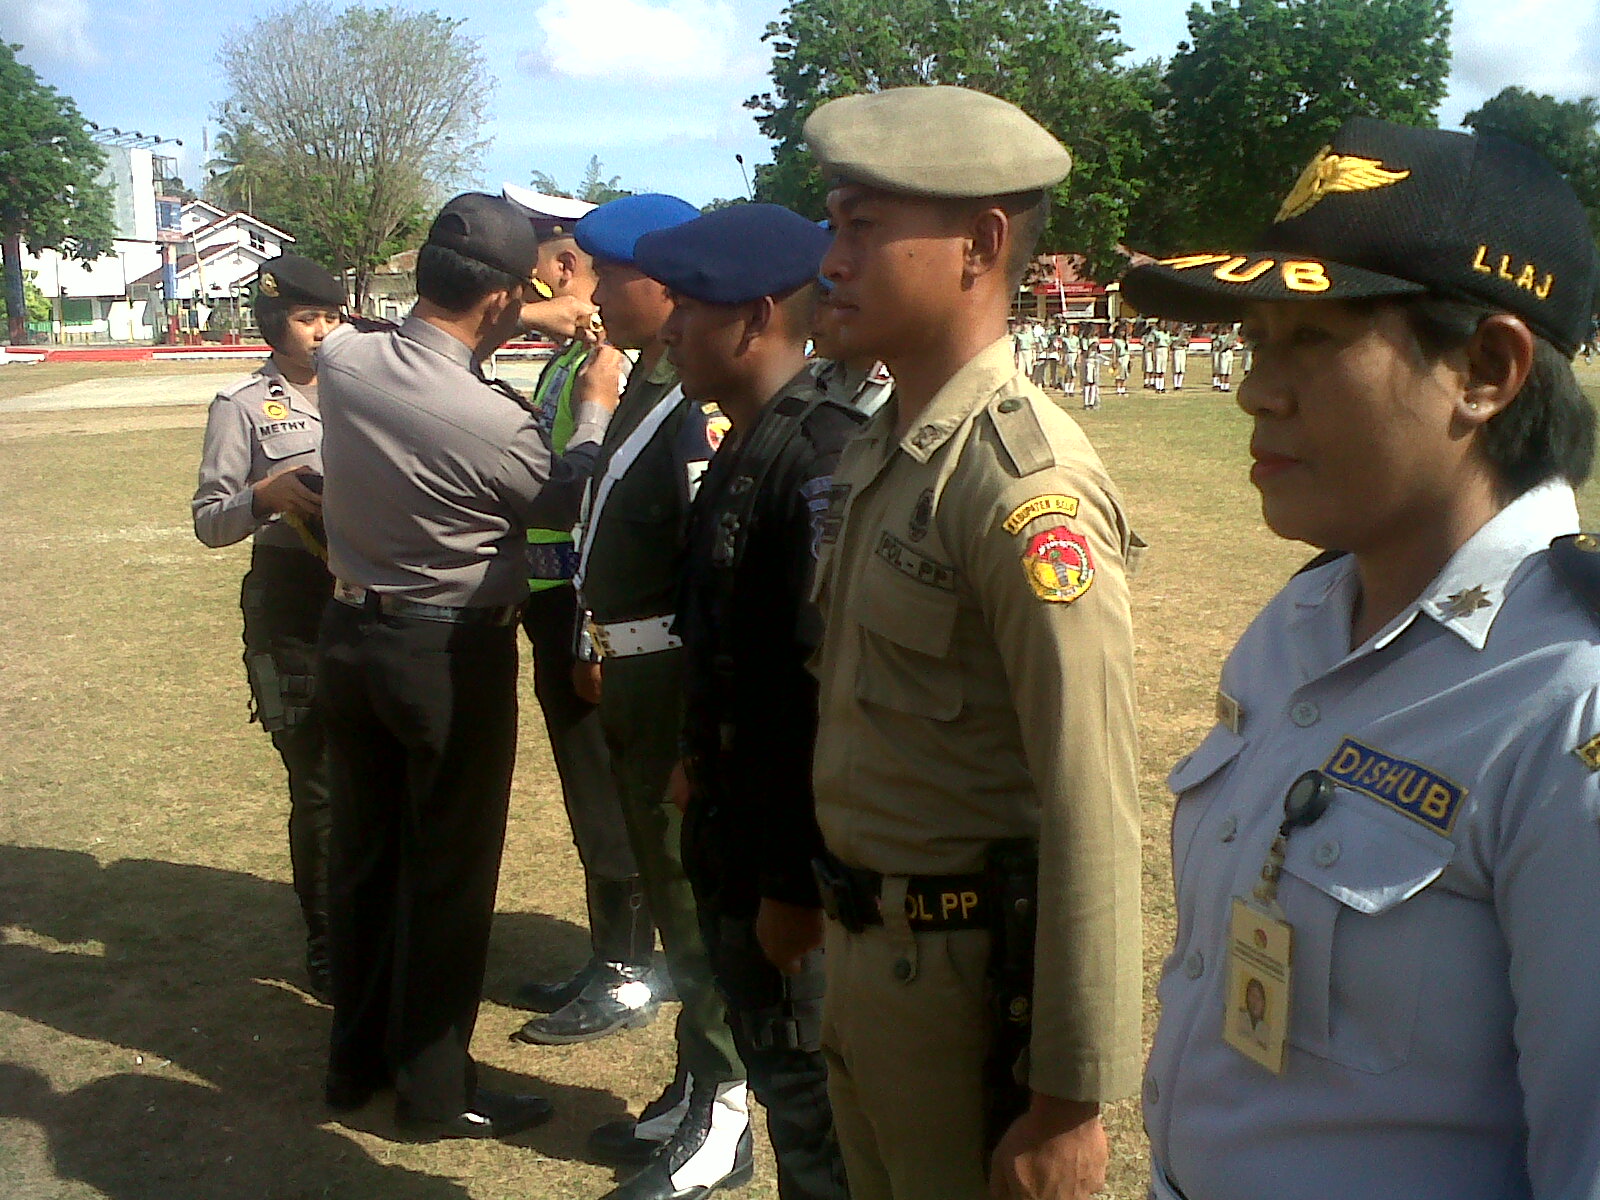 Tampak Kapolres menyematkan pita operasi kepada personil polisi, TNI dan pihak terkait lainnya.